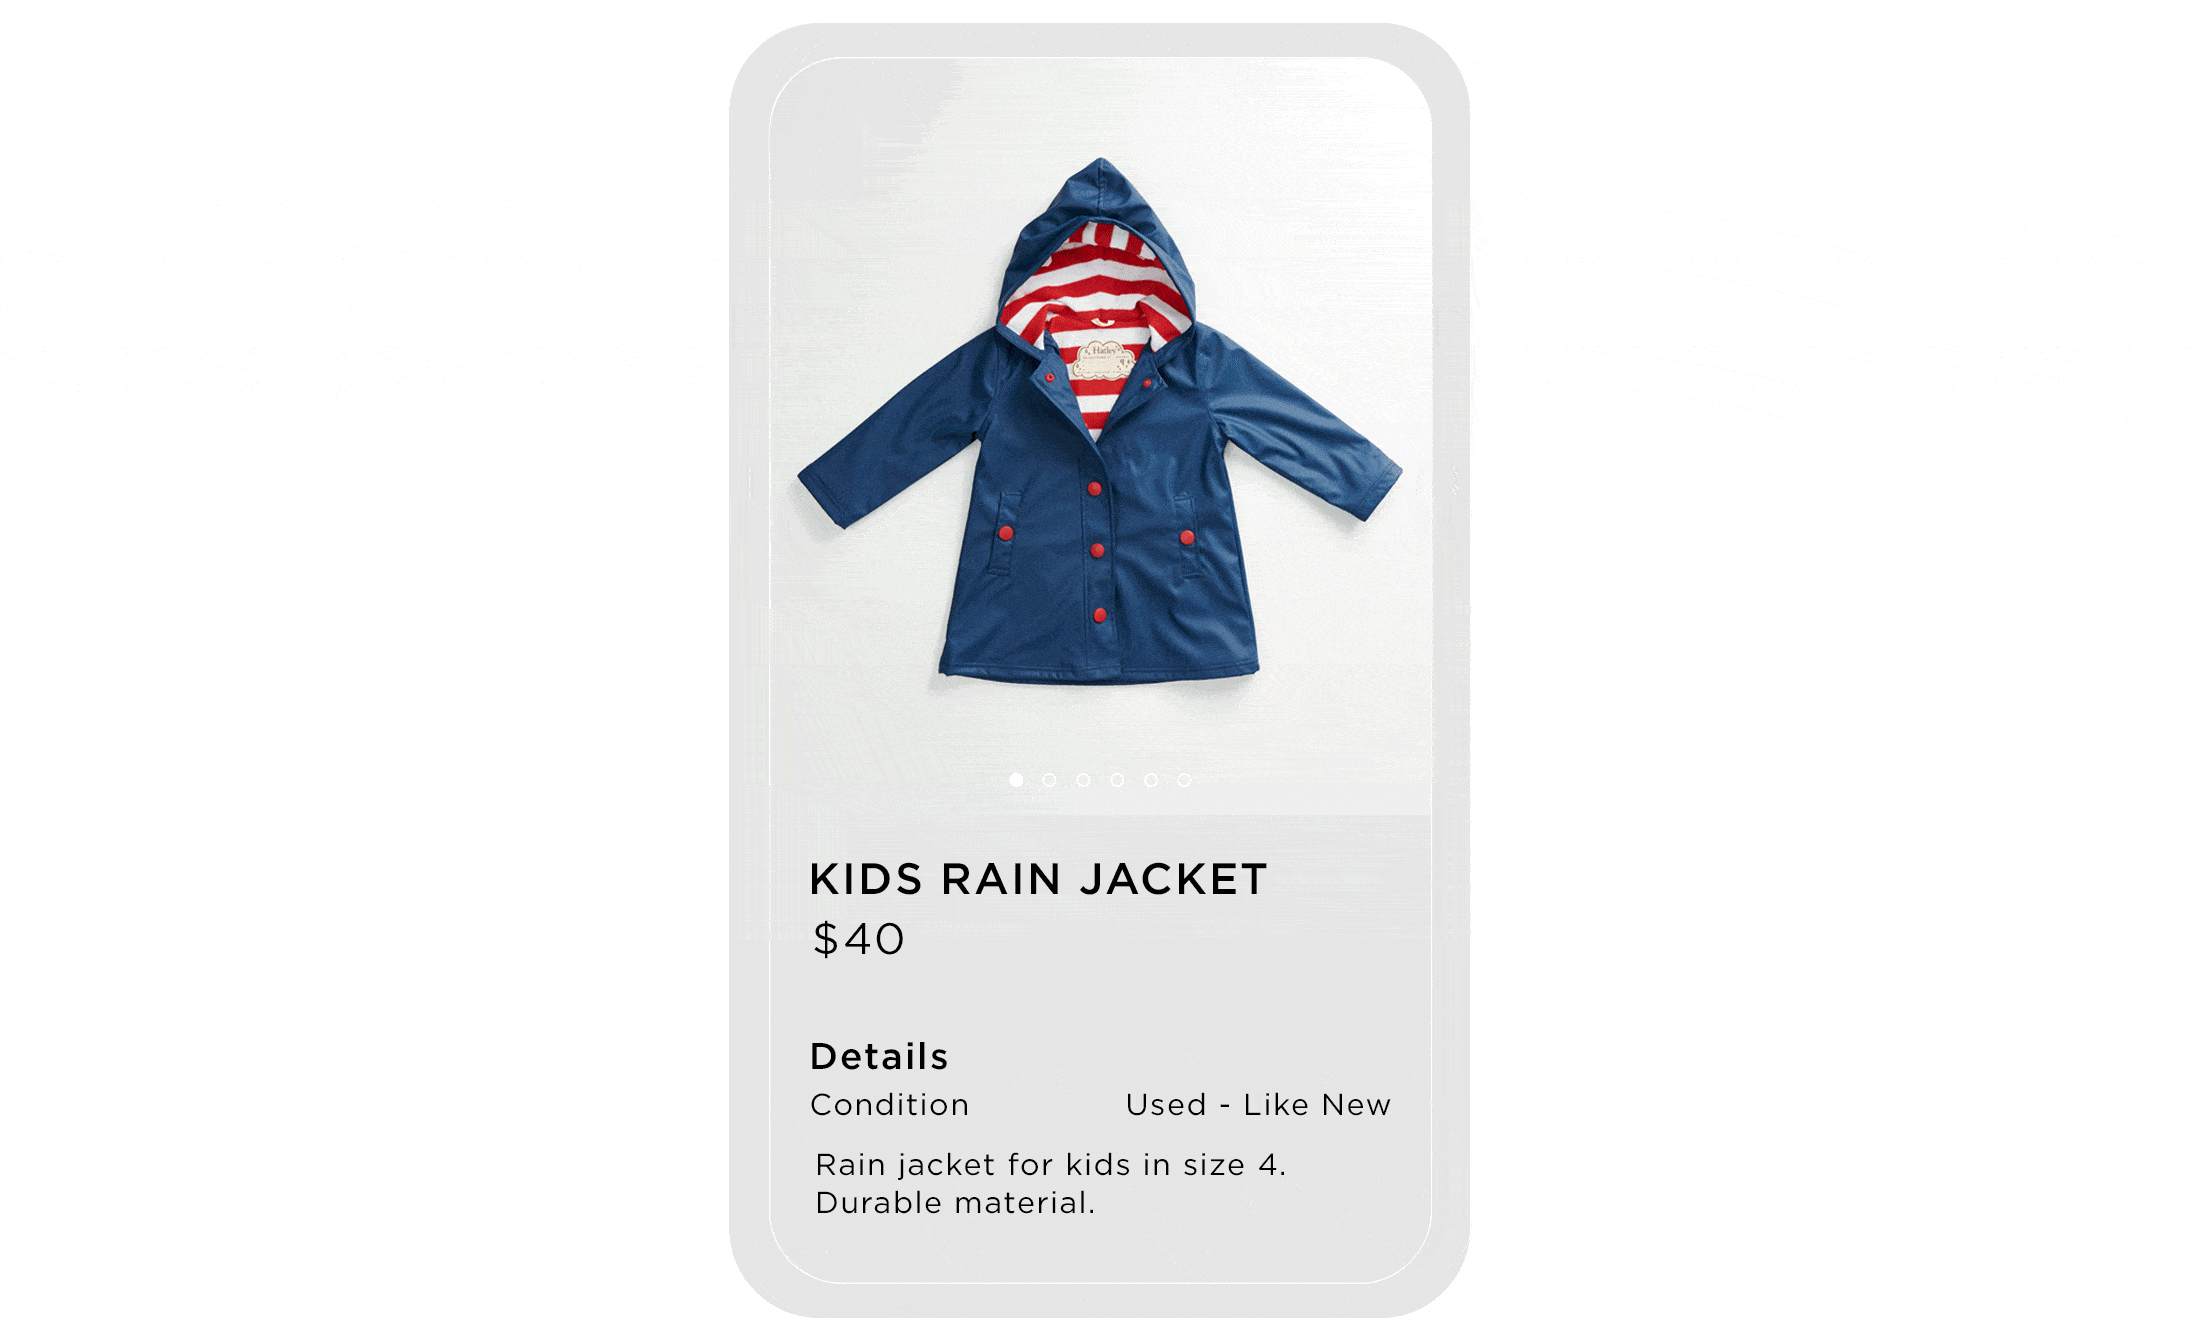 Kids rain jacket listing